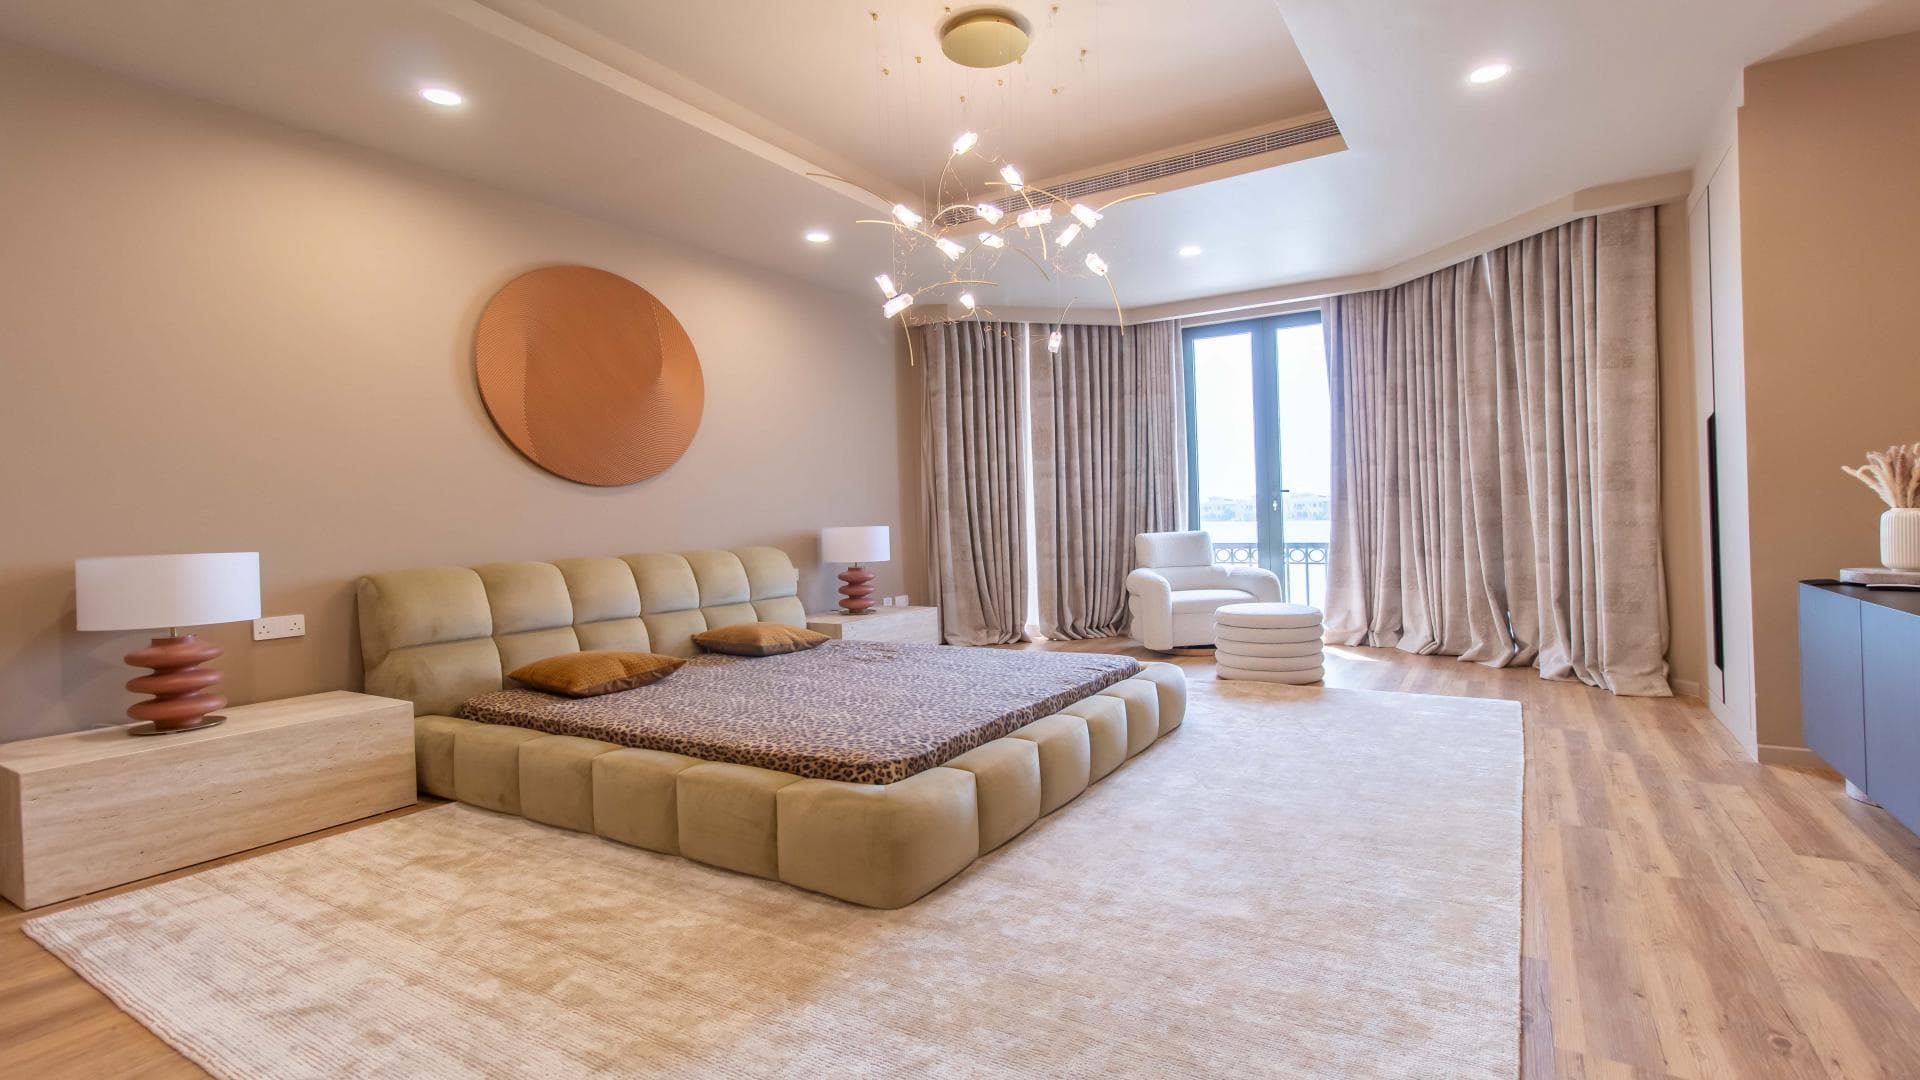 4 Bedroom Villa For Rent Mughal Lp37417 2436a087e93d2c00.jpg